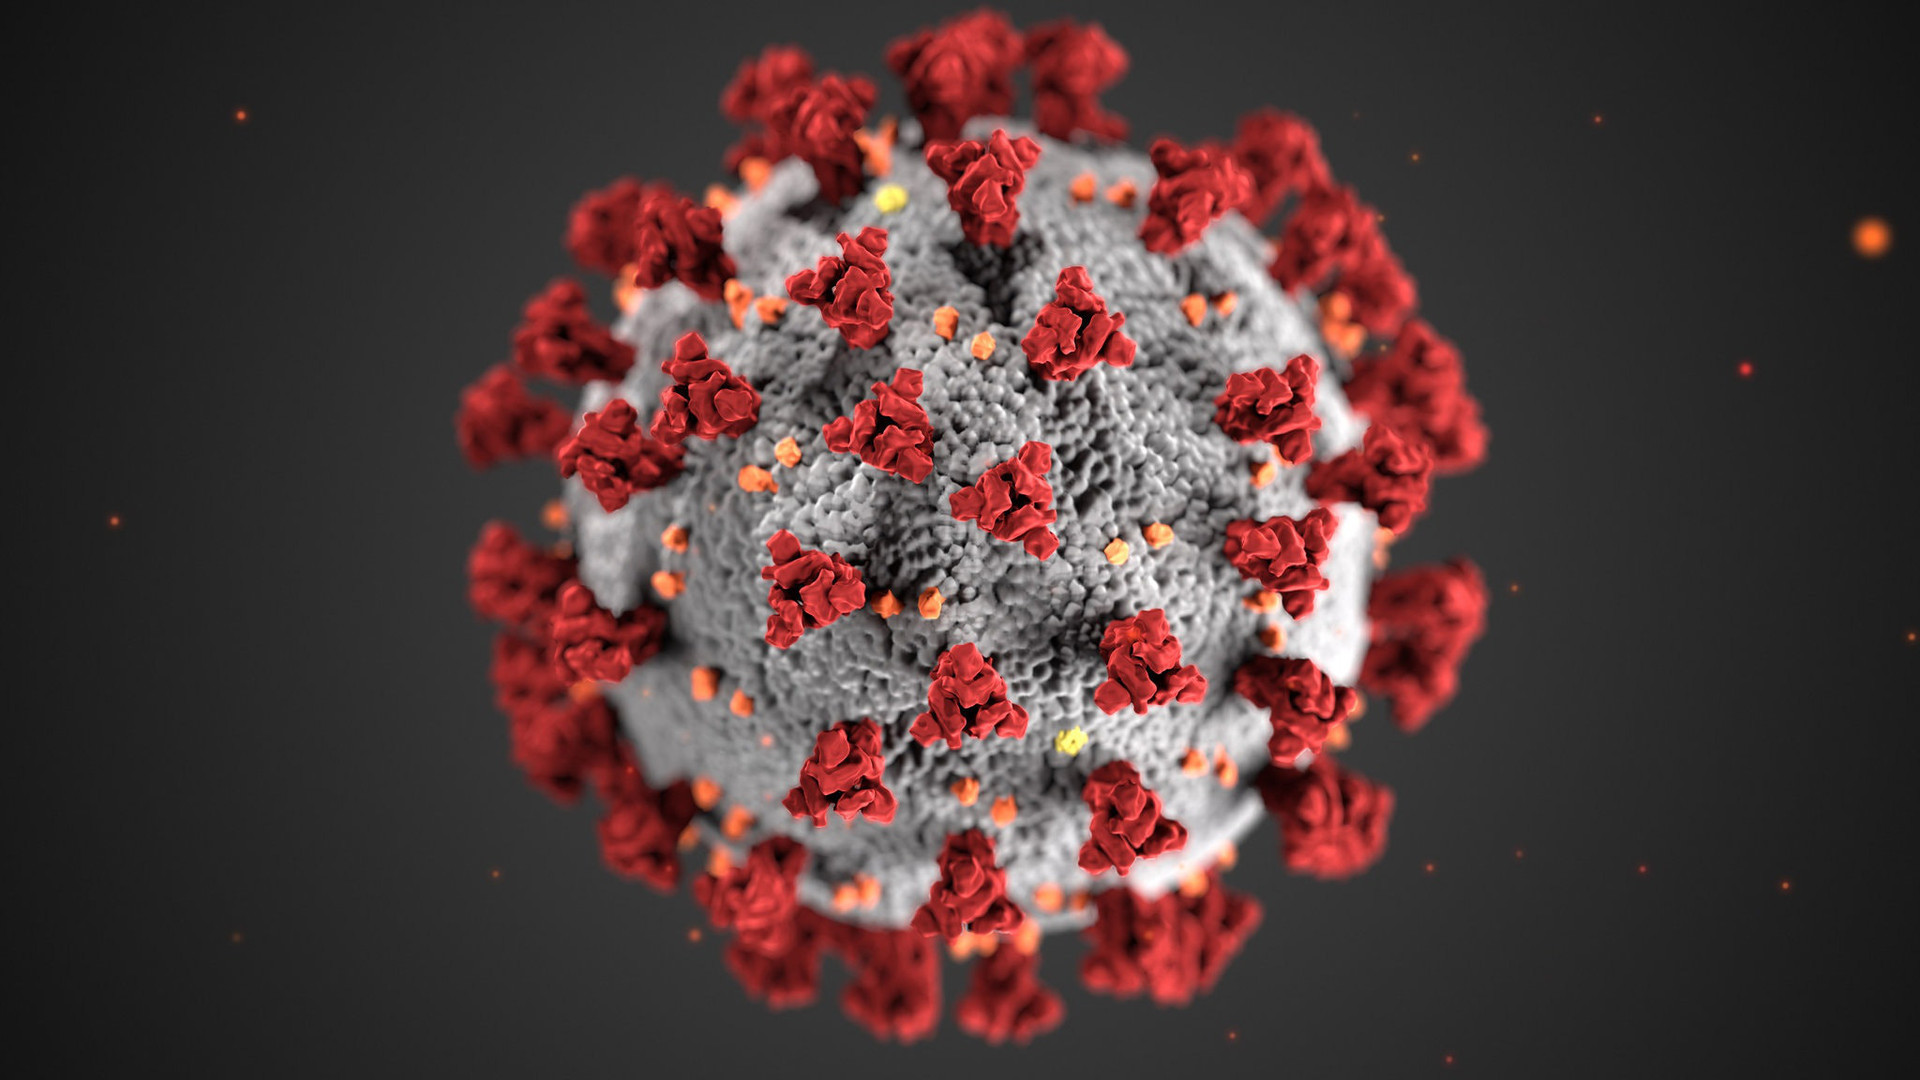 Khối cầu gai khuynh đảo thế giới: Thấy gì từ bức hình minh họa 3D nổi tiếng của virus SARS-CoV-2? - Ảnh 3.